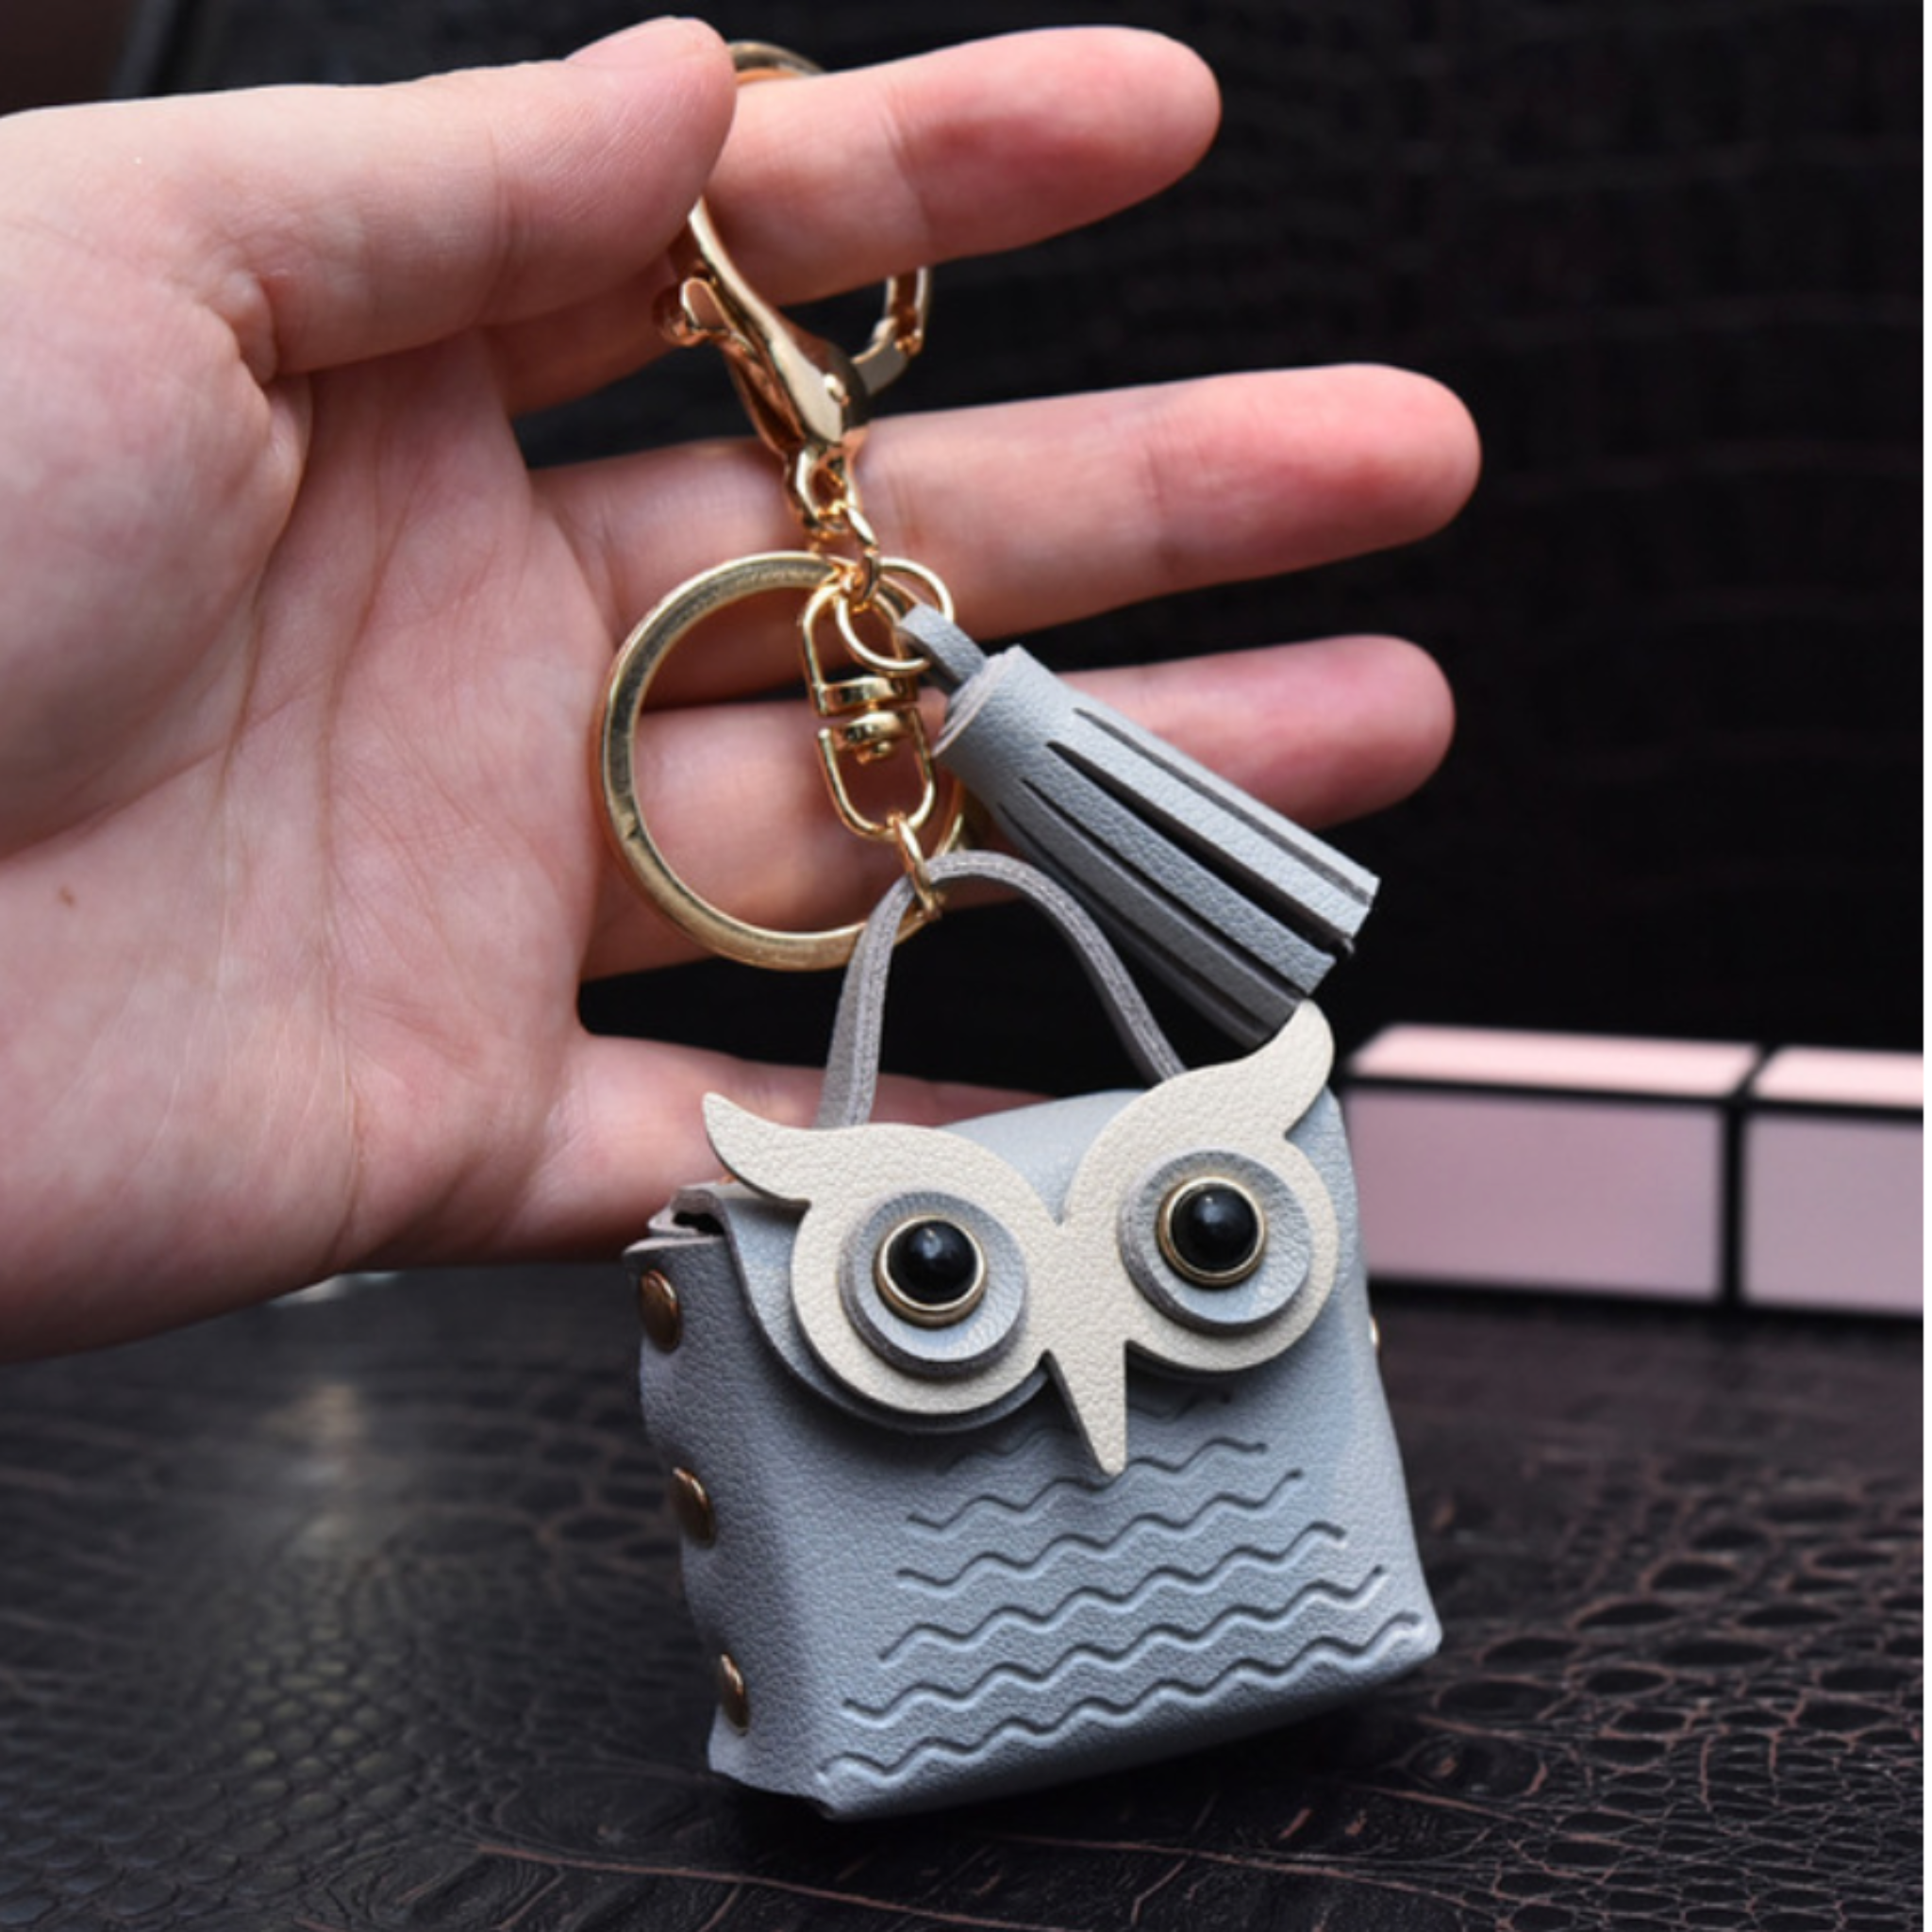 Owl Coin Purse Keychain